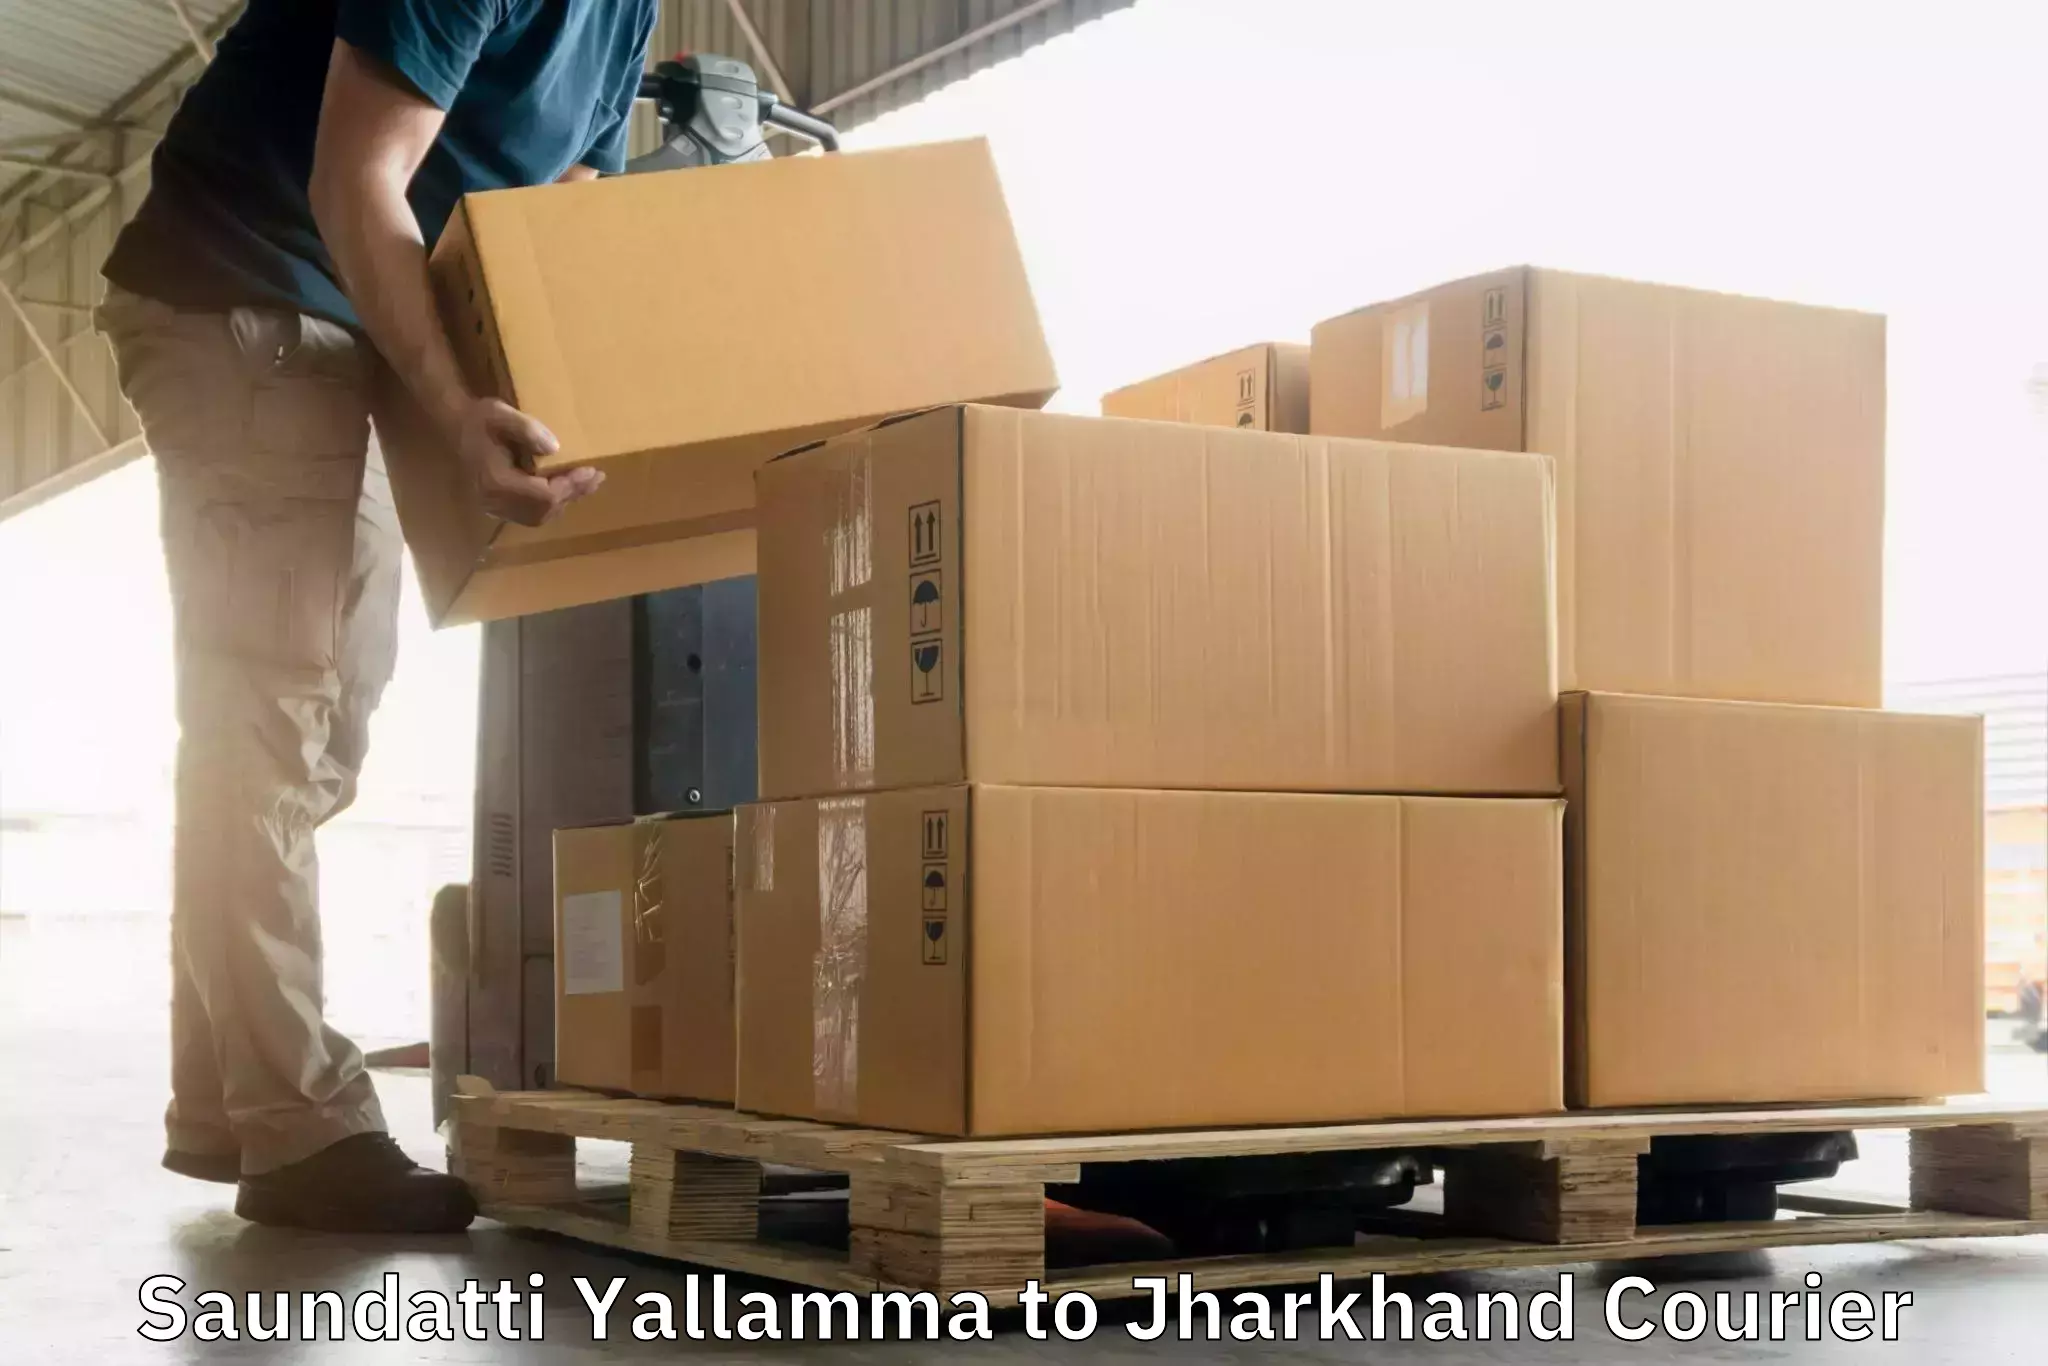 Reliable courier services Saundatti Yallamma to Ranchi